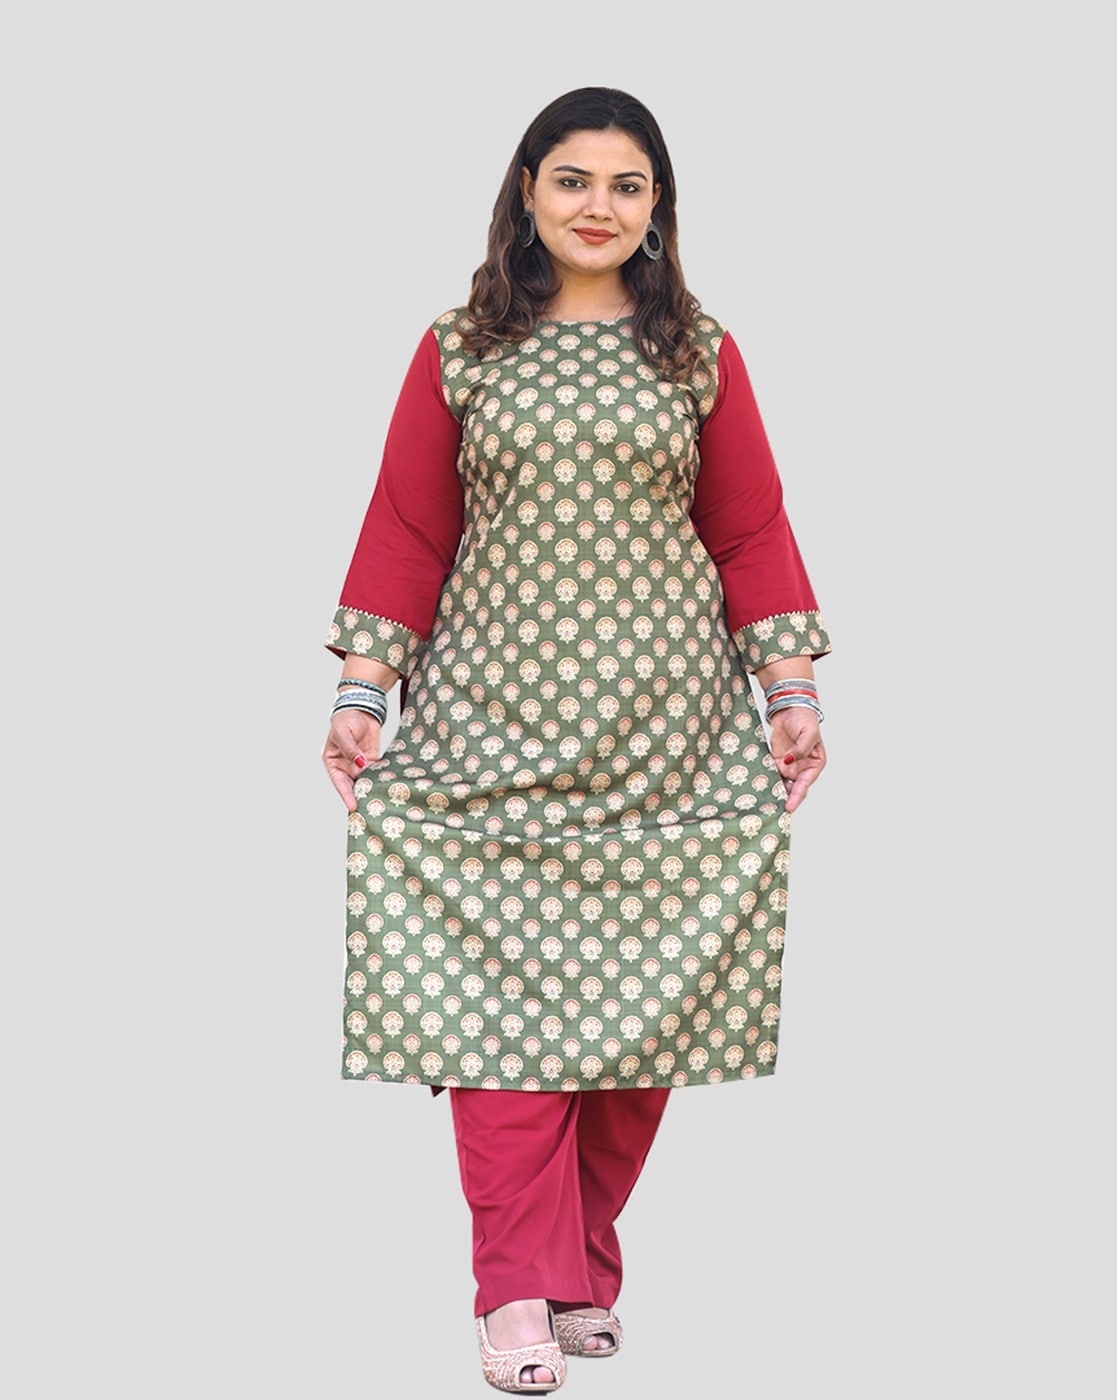 Cotton Kurtis - Buy Cotton Kurtis Online Starting at Just ₹156 | Meesho